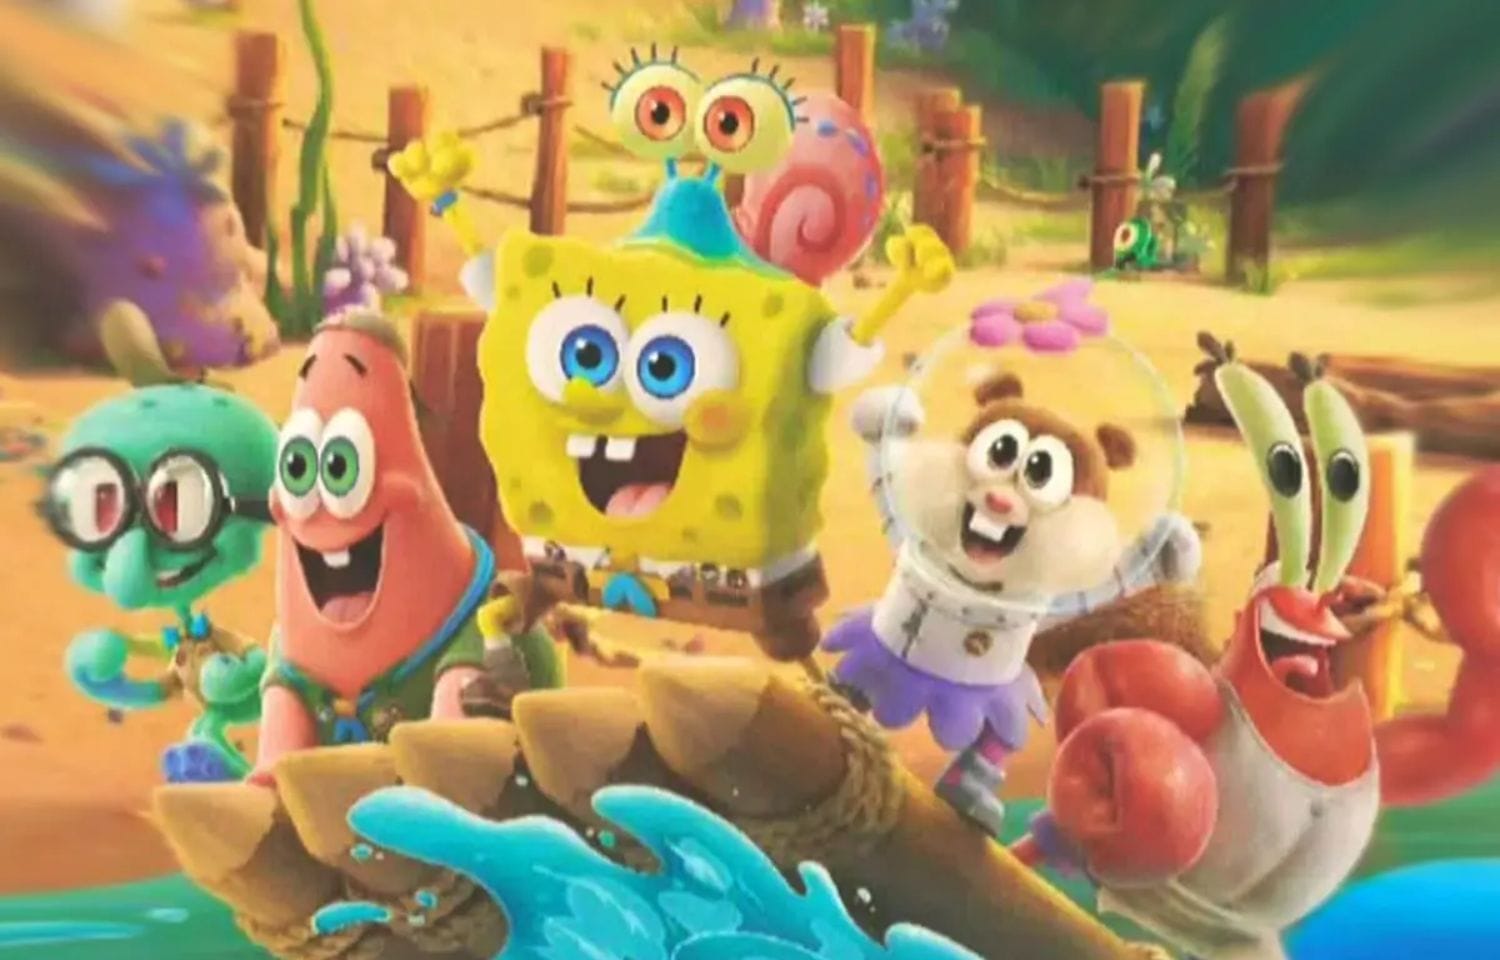 Kamp Koral Spongebob Under Years Season 2 Release Date